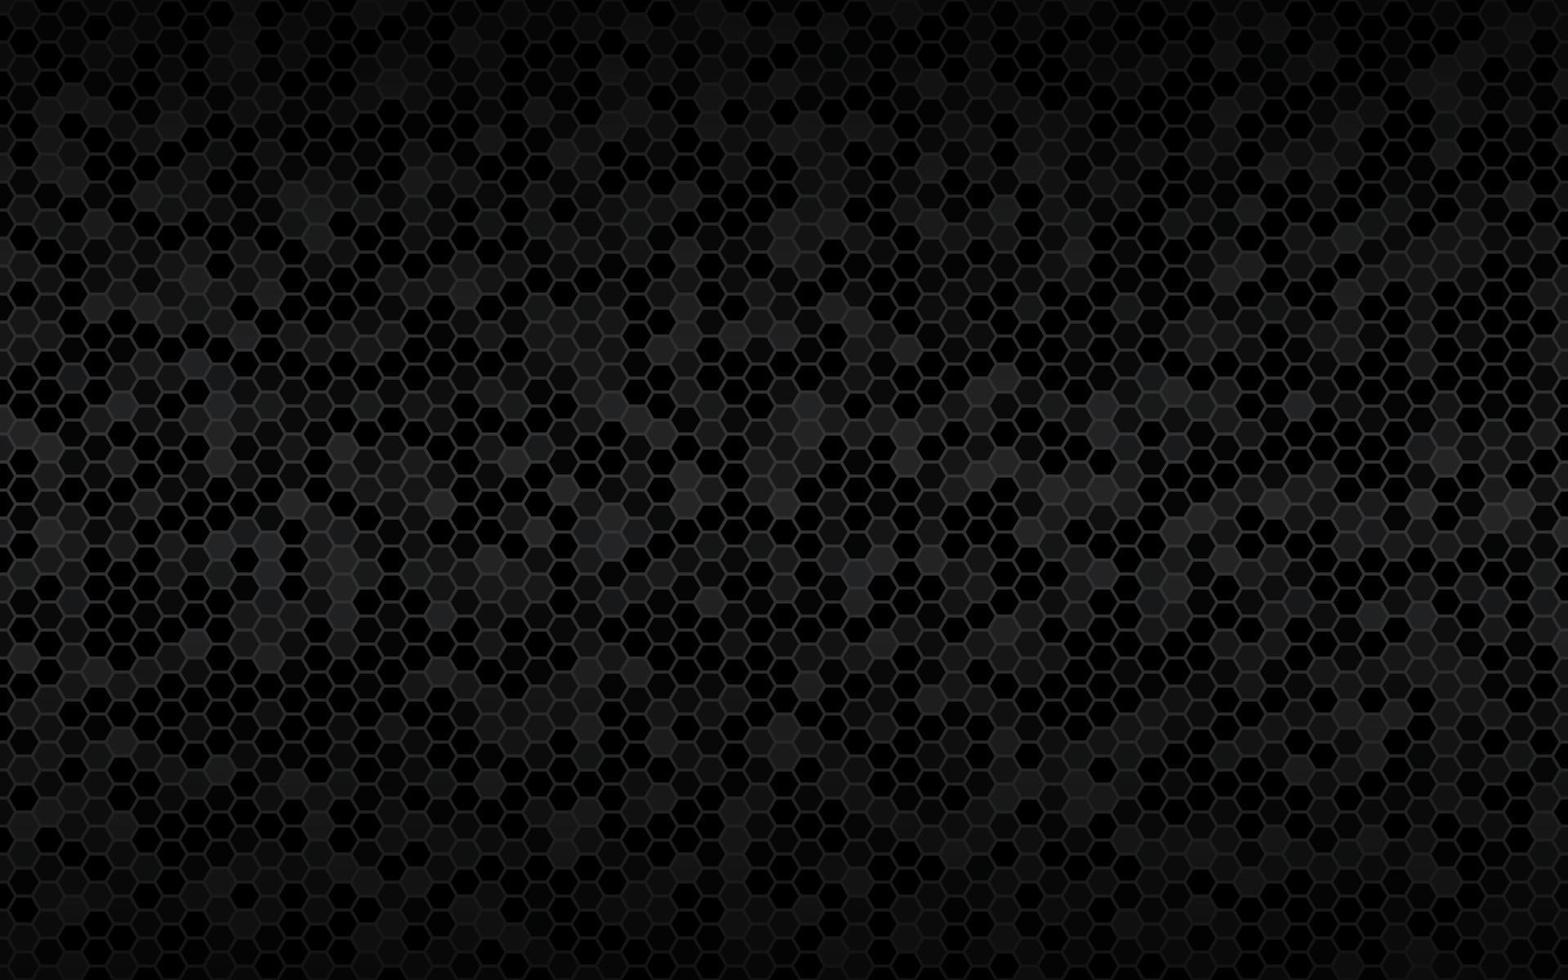 sfondo scuro widescreen con esagoni con diverse trasparenze moderno design geometrico nero semplice illustrazione vettoriale